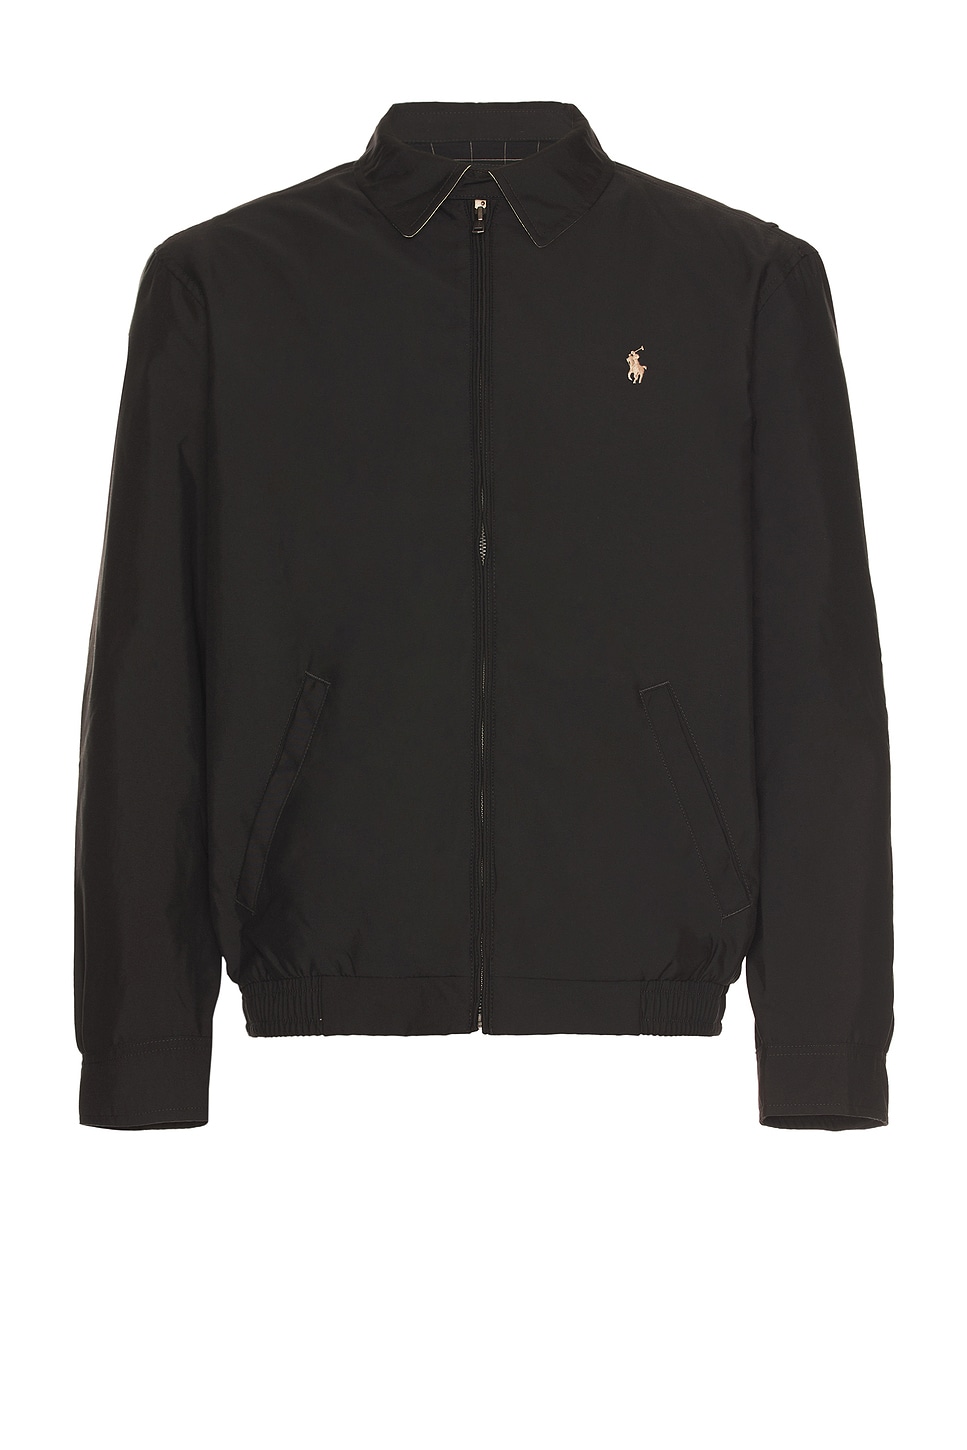 Image 1 of Polo Ralph Lauren Bi-swing Windbreaker Jacket in Rl Black